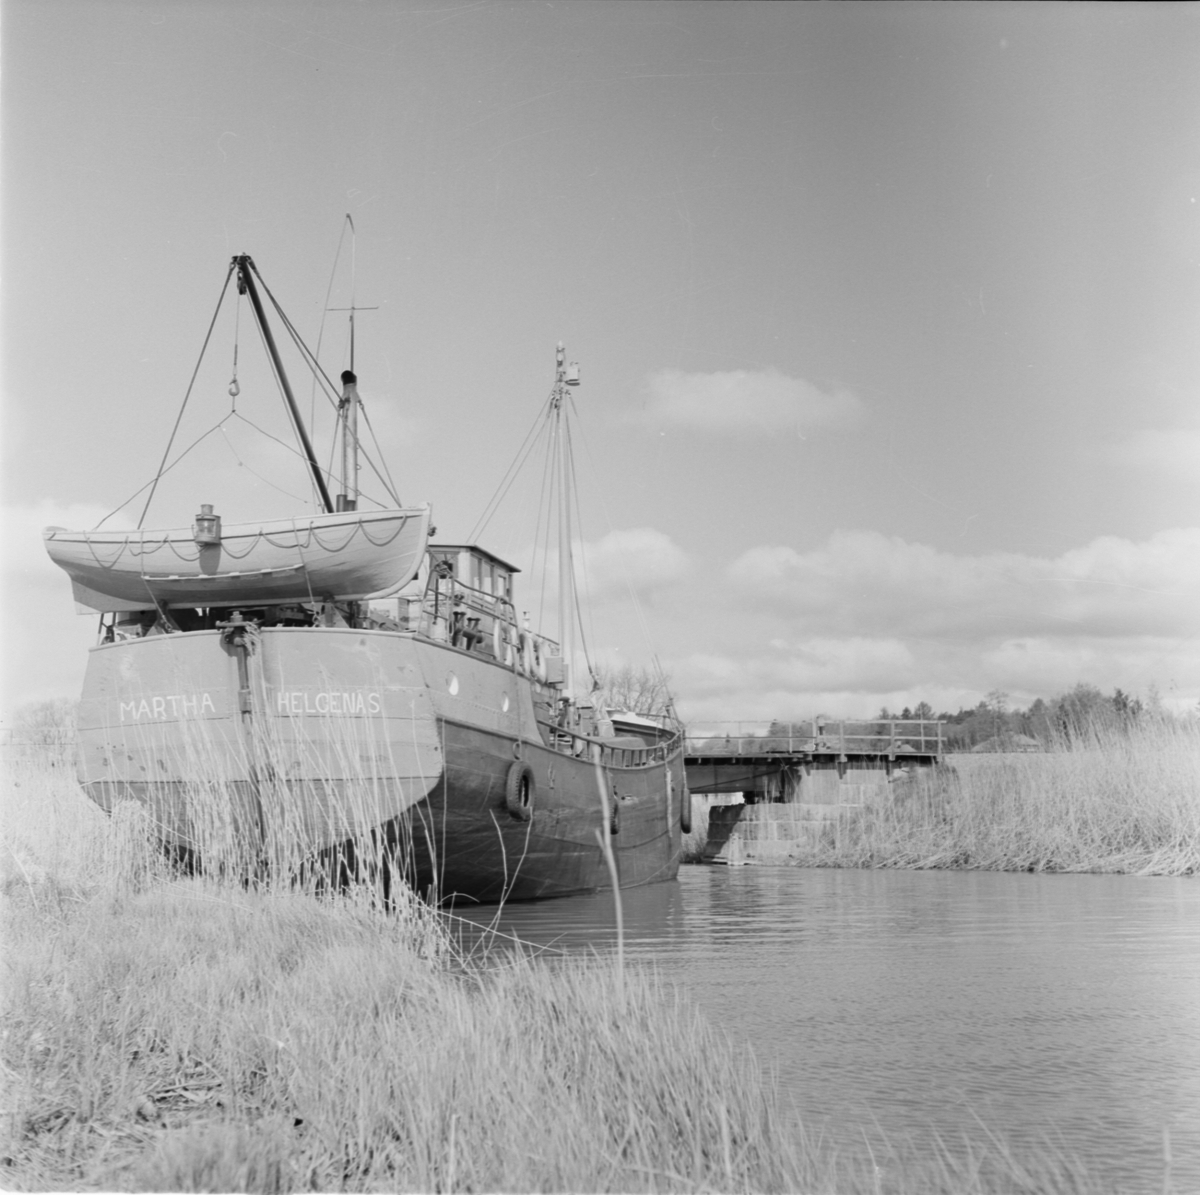 Lastbåten "Martha" ligger i vattnet vid Örsundsbro, järnvägsbron i bakgrunden, Uppland 1950-60-tal